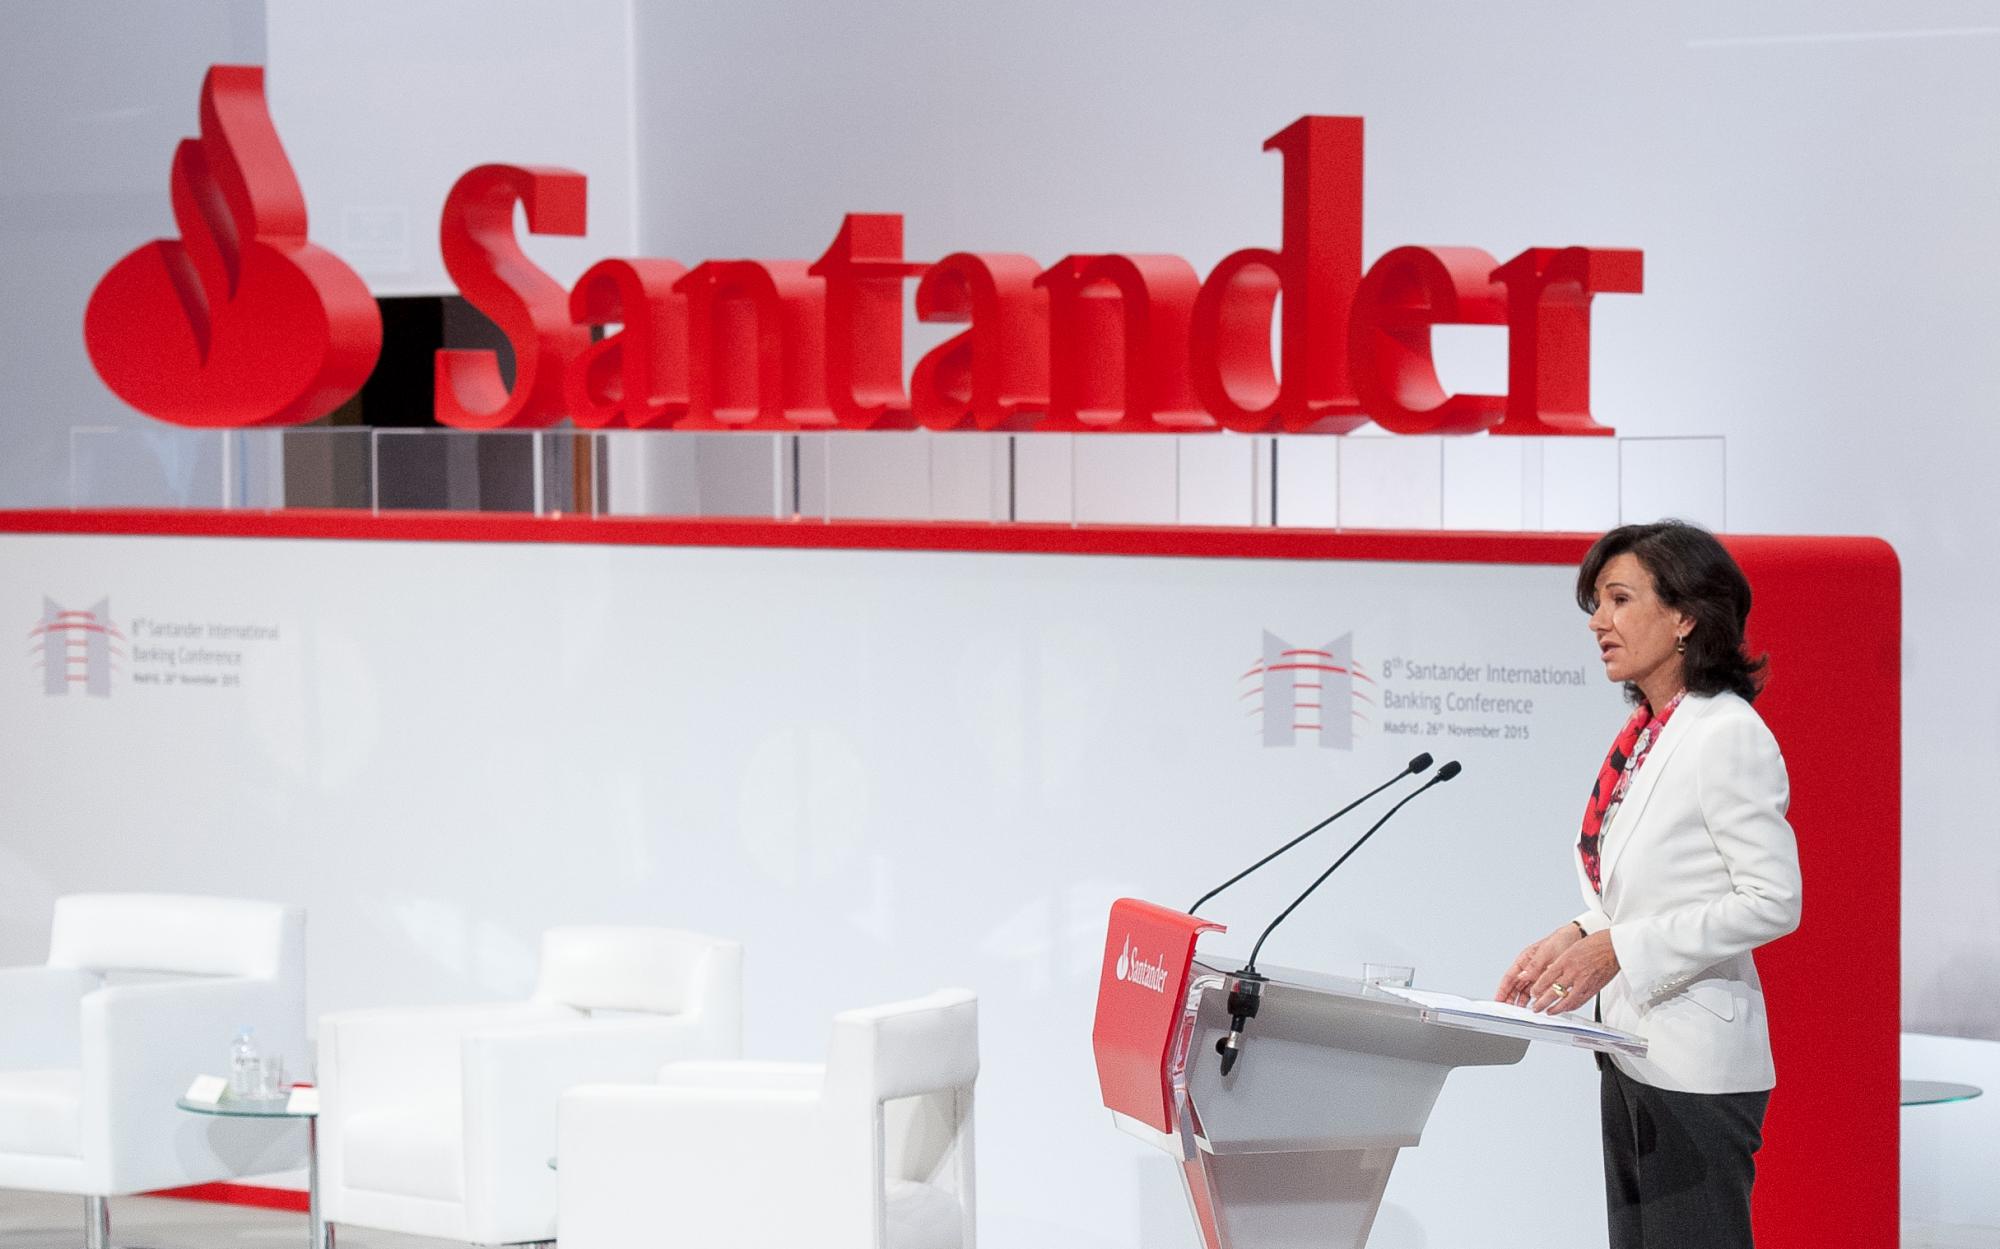 Foto: Banco Santander